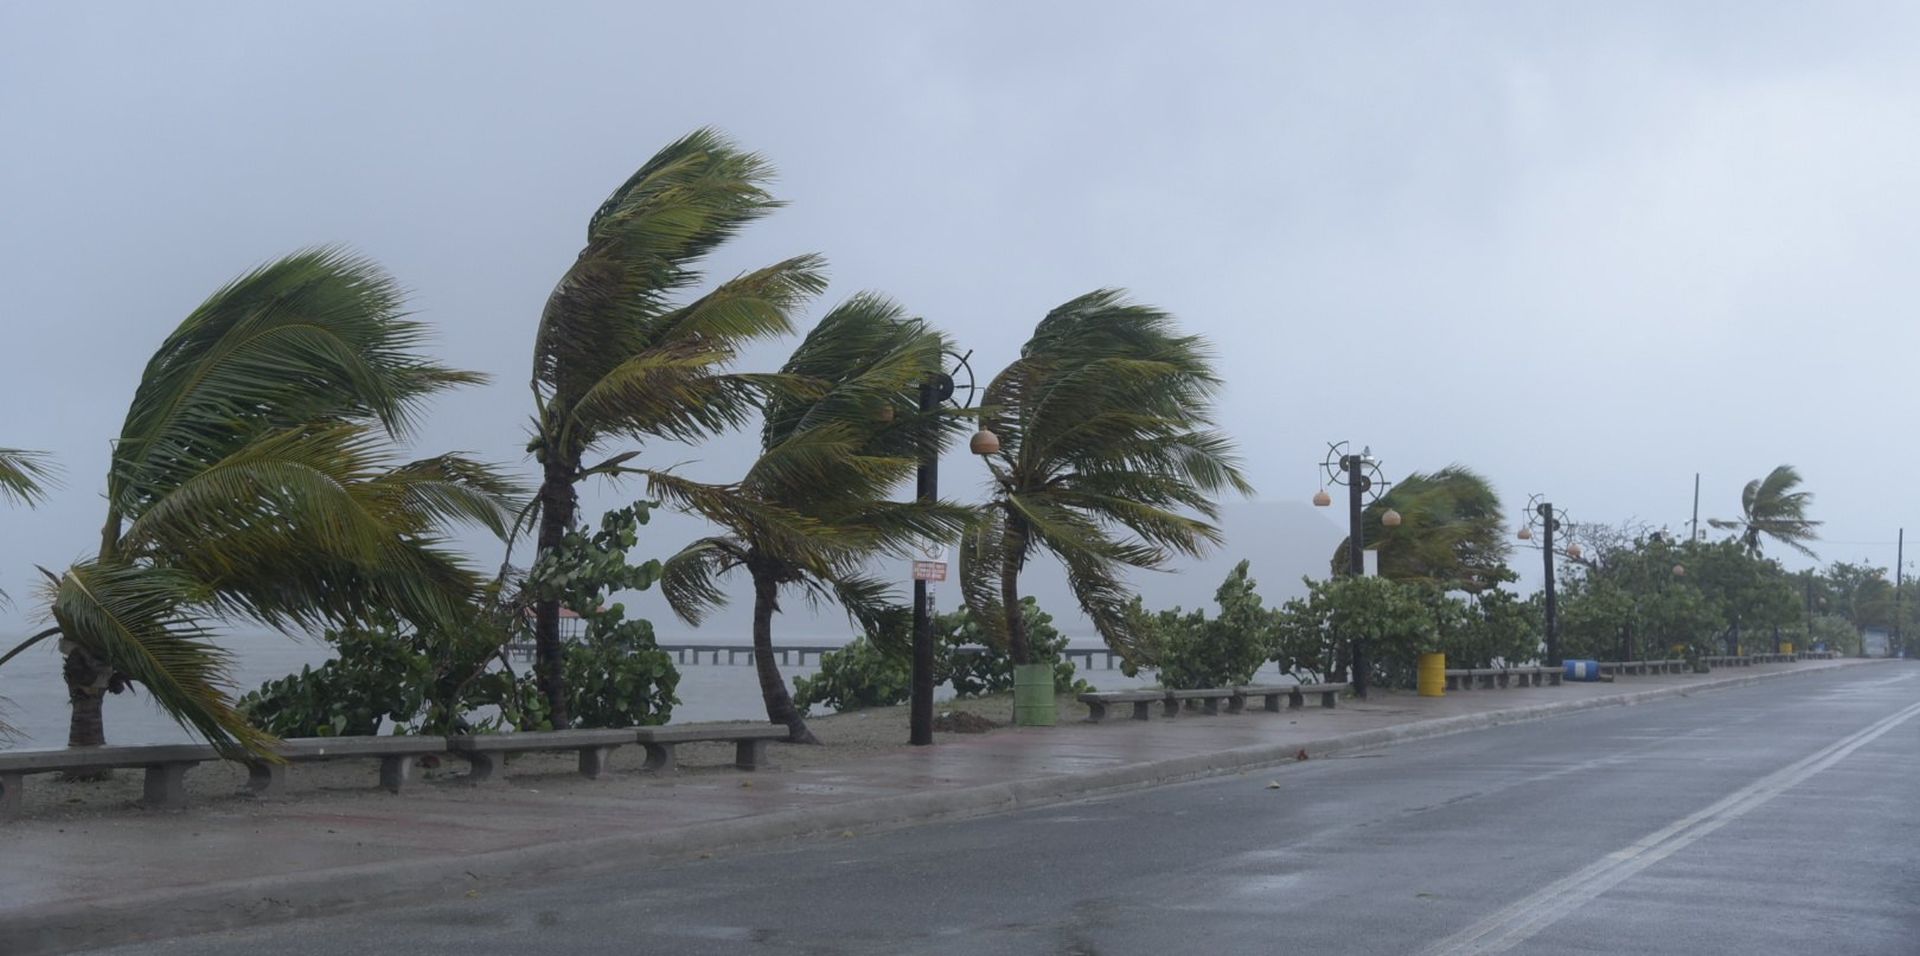 VIDEO: URAGAN IRMA “Oko uragana” stiglo na kontinentalnu Ameriku